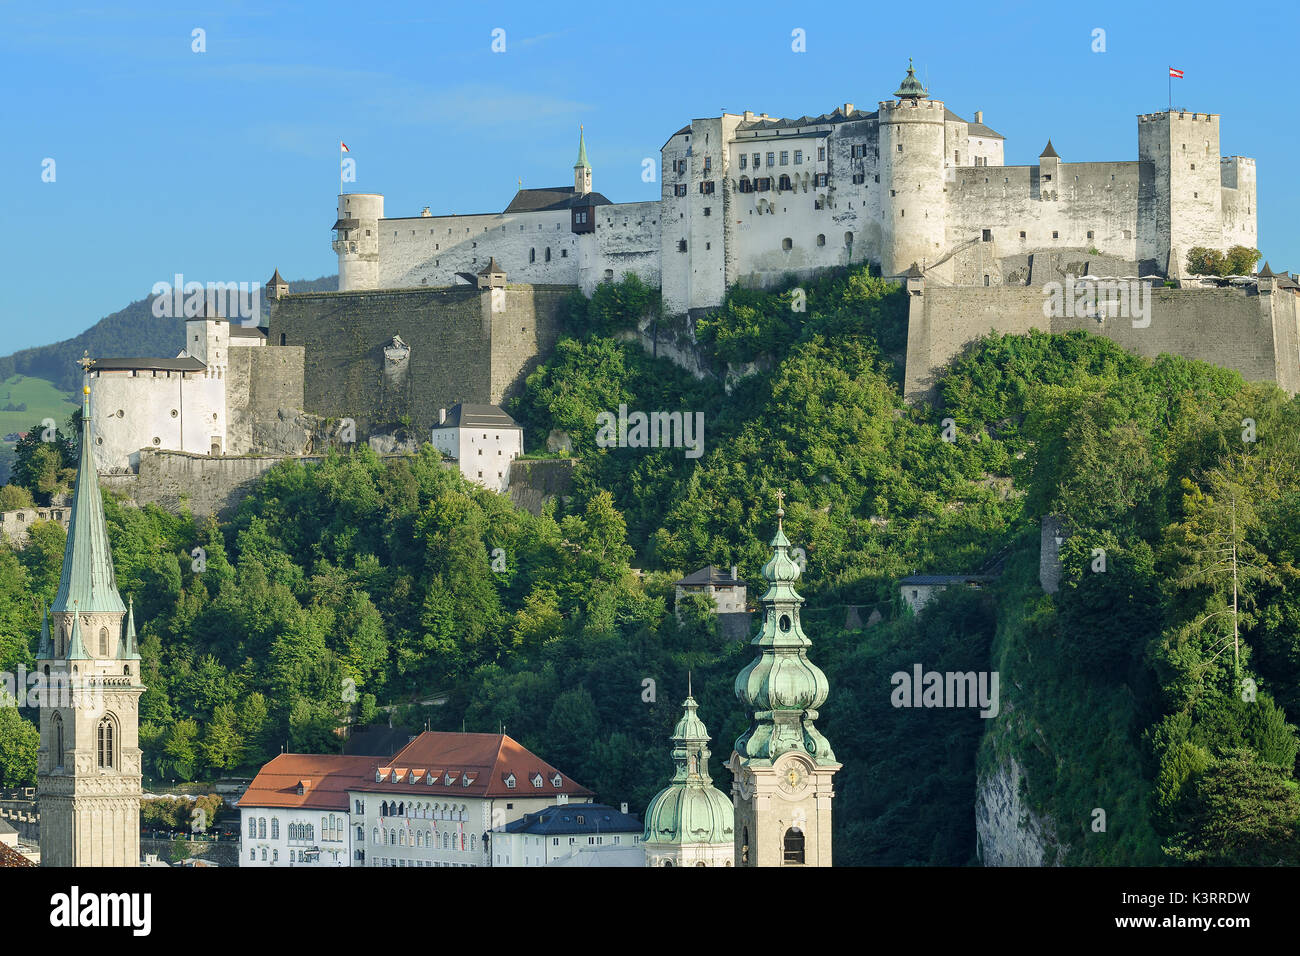 Die Festung Hohensalzburg in Österreich, Blick vom Moenchsberg. Festung Hohen Salzburg sitzt auf dem Festungsberg. Kleine Hügel in der österreichischen Stadt Salzburg. Stockfoto